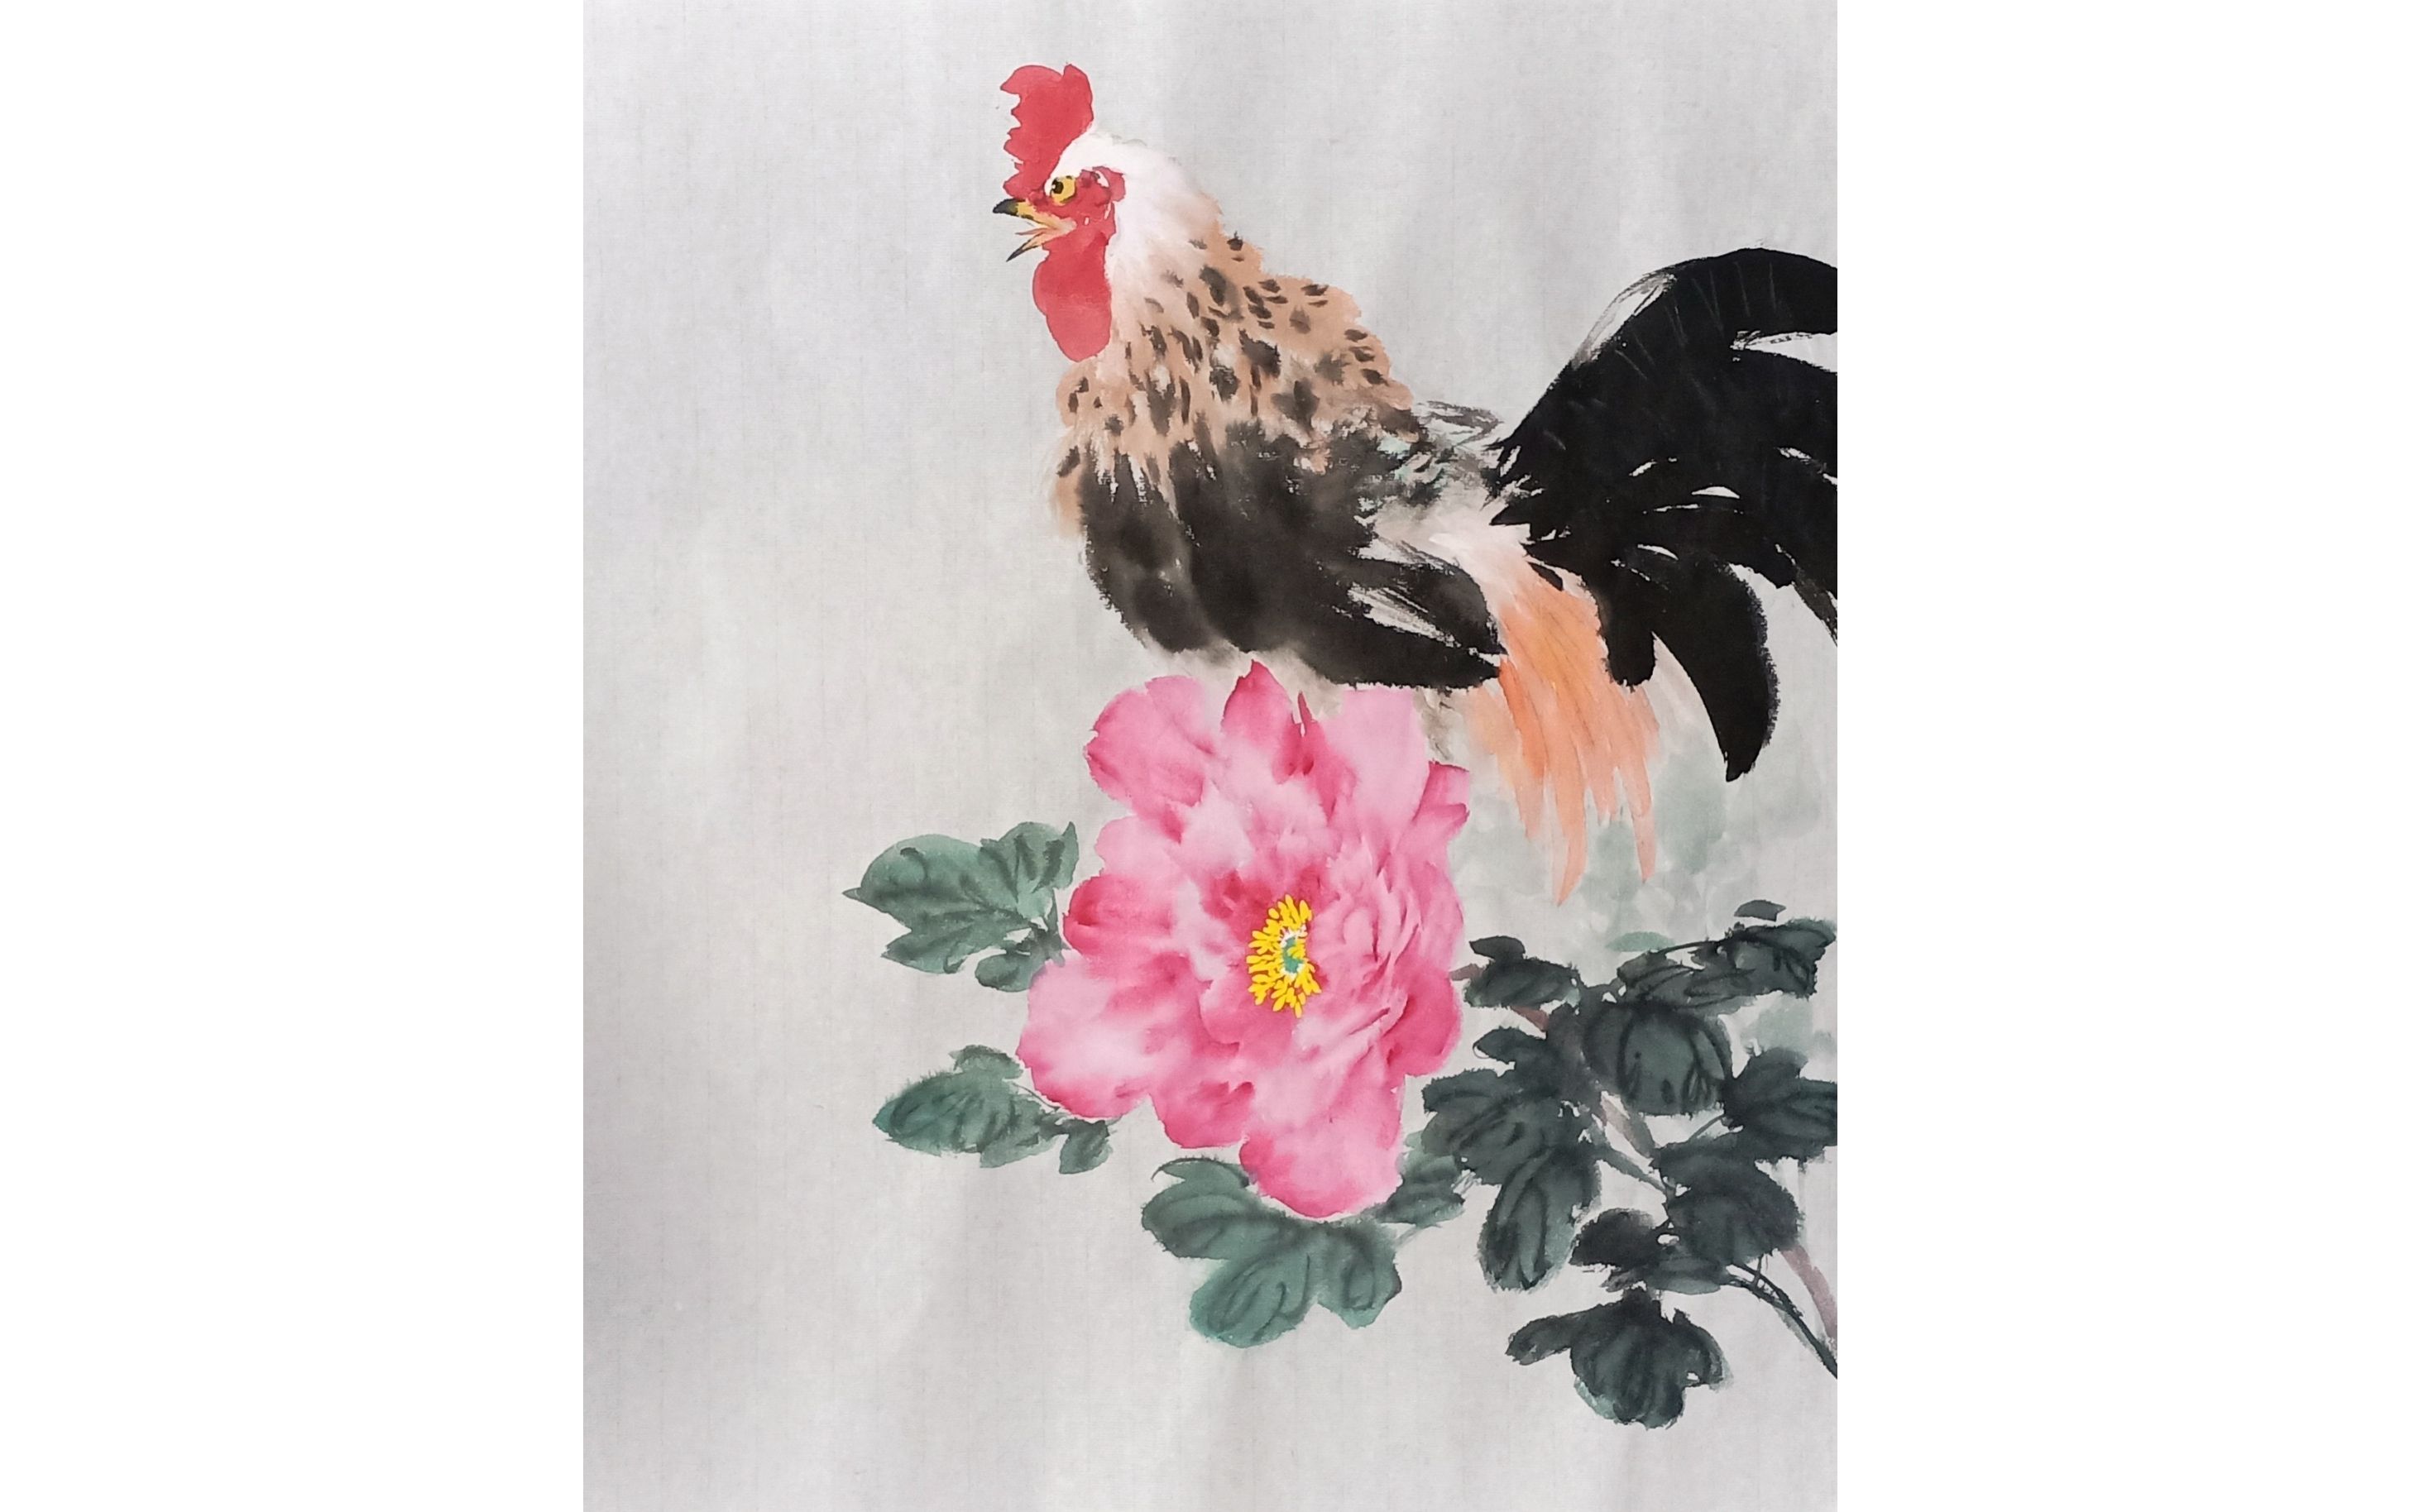 牡丹公鸡国画作品图片